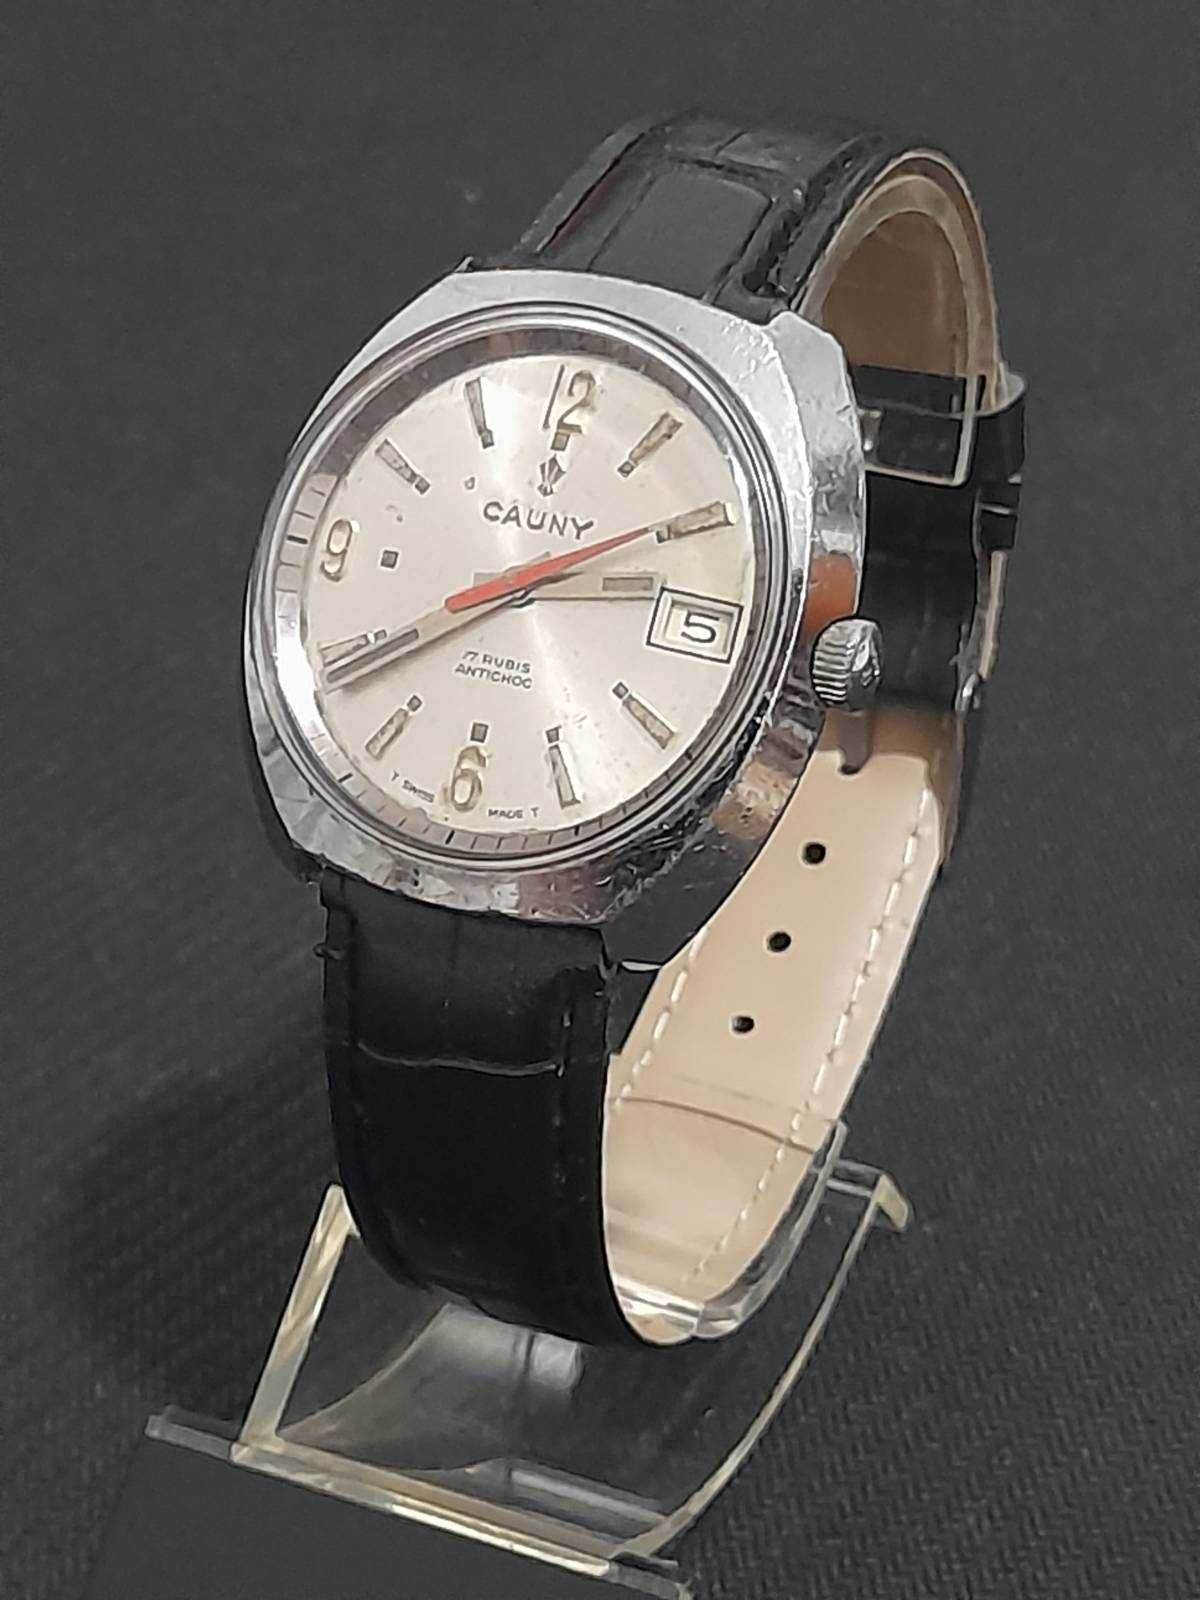 Relógio Homem - Cauny - AS ST 1950 51 de Corda Manual